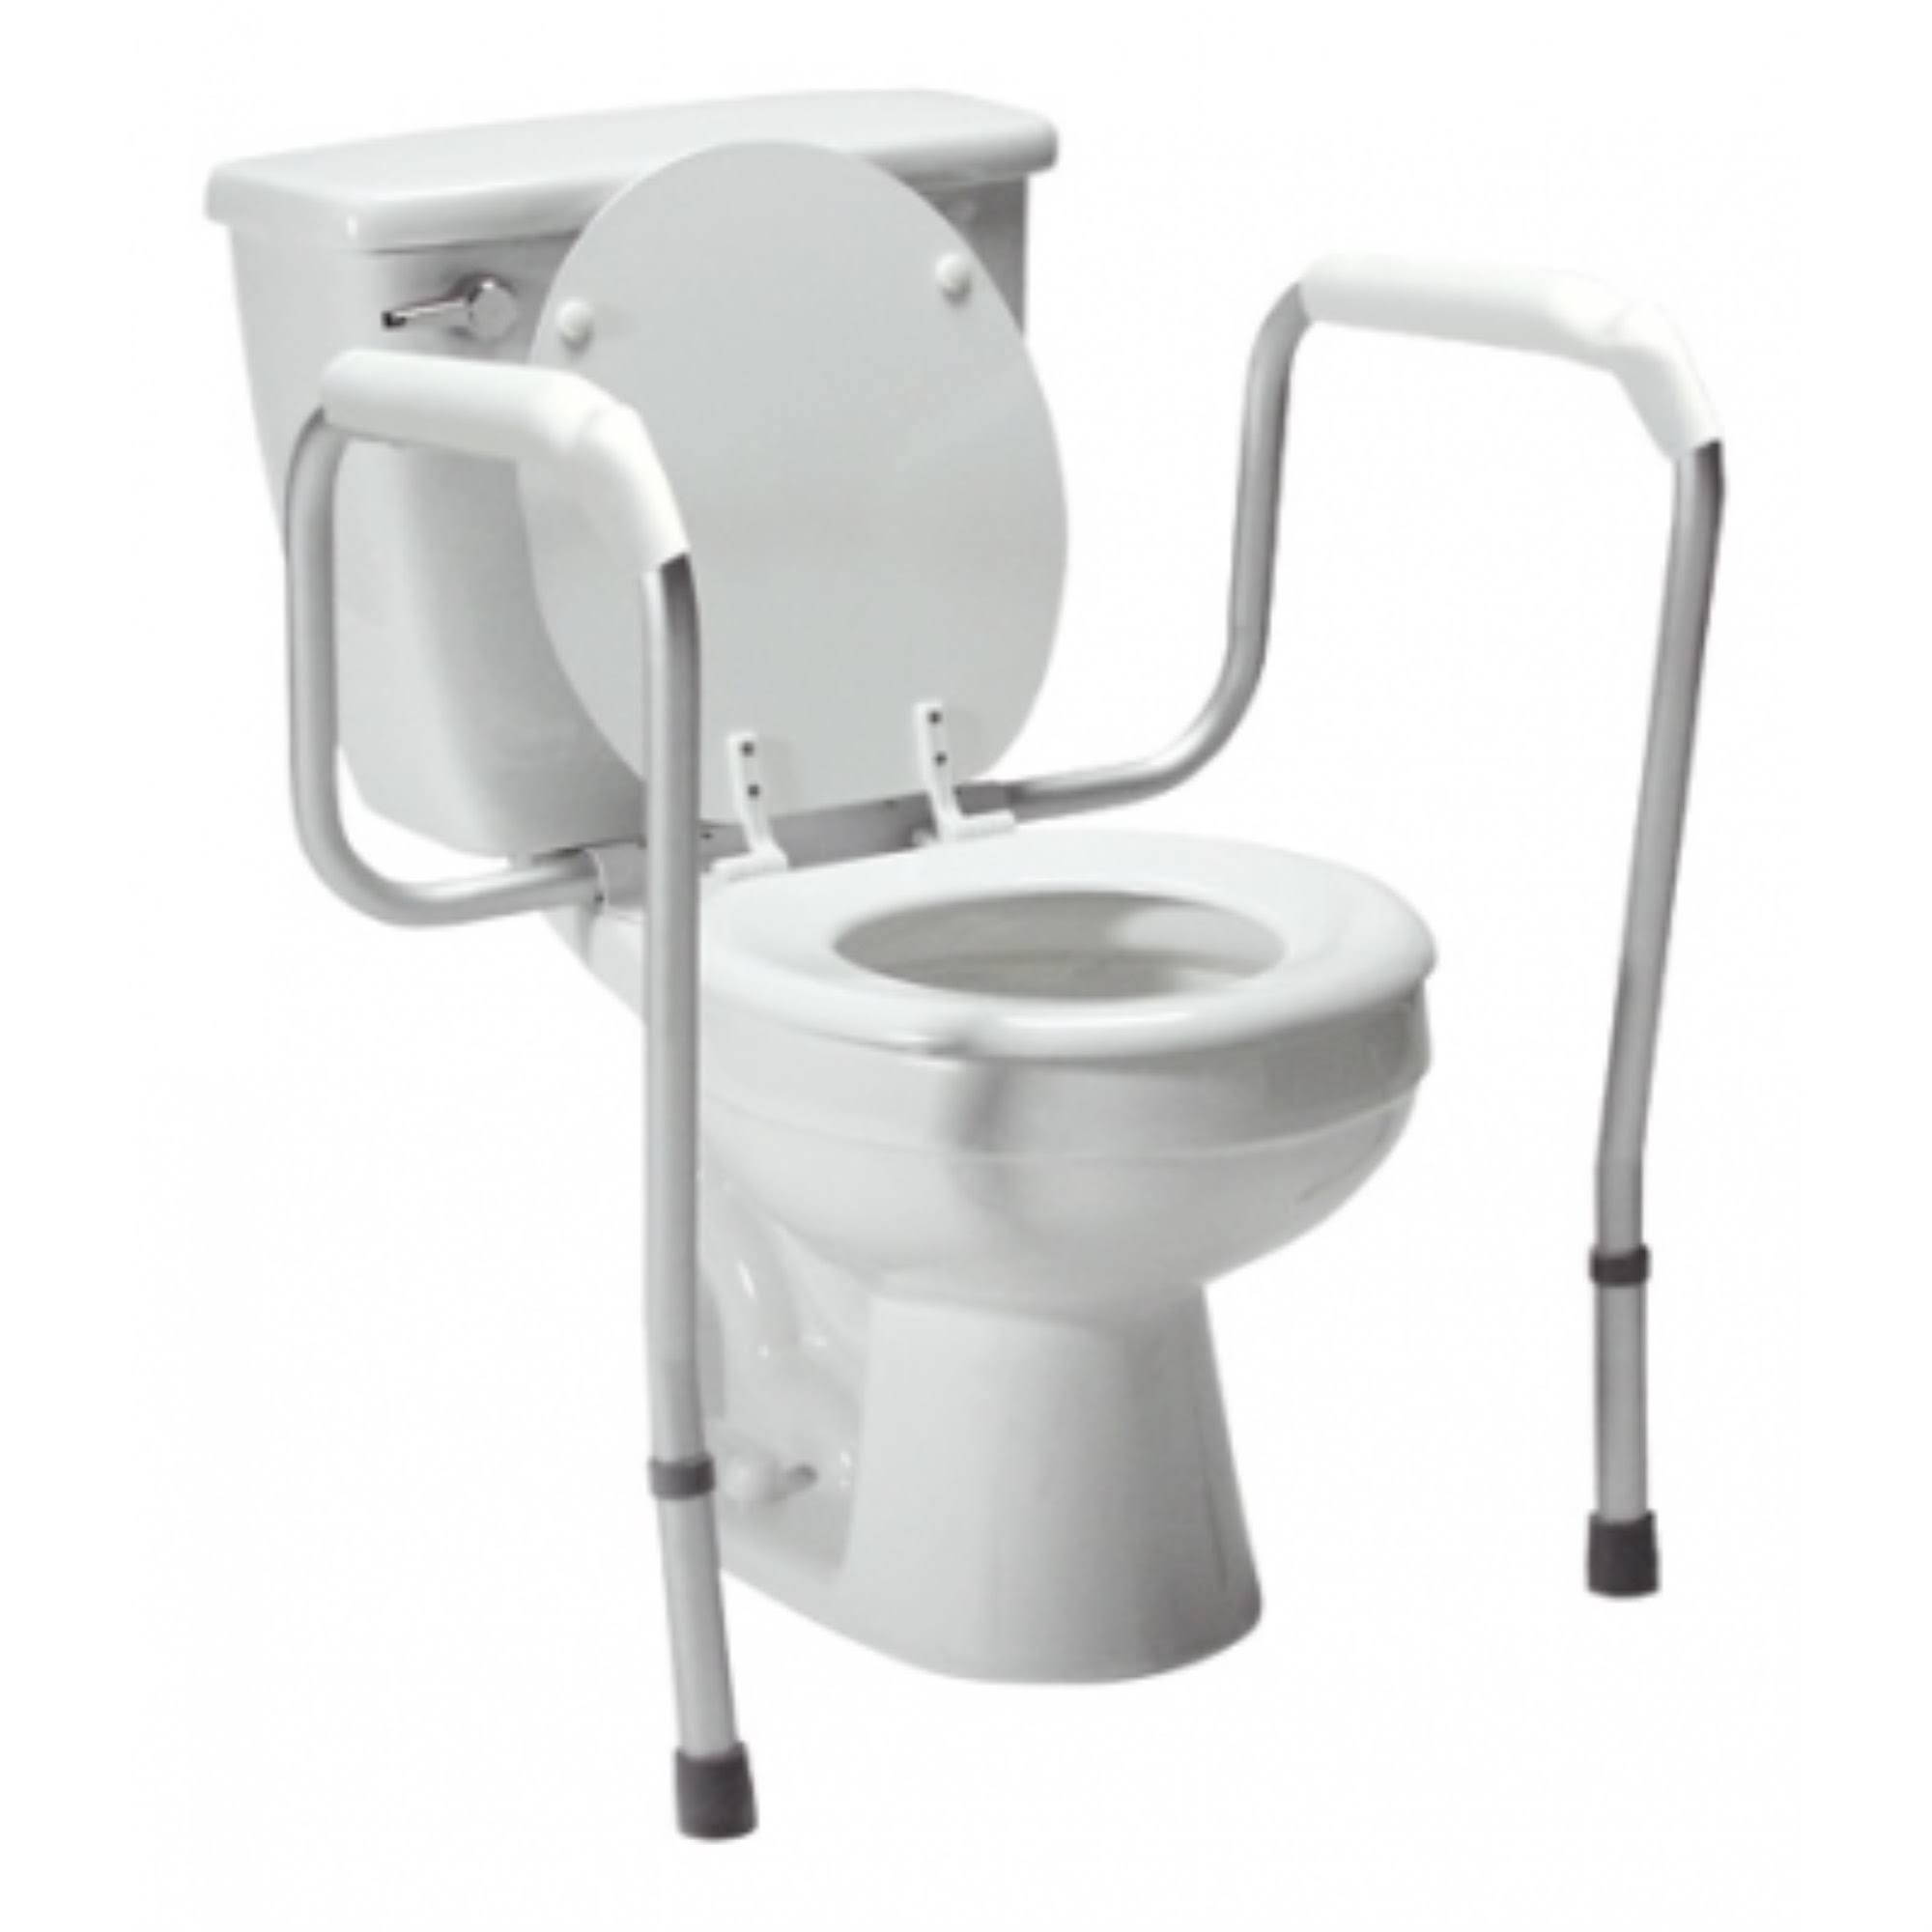 Lumex Versaframe Adj Height Toilet Safety Rails, Unassembled, Retail Package, 3/cs